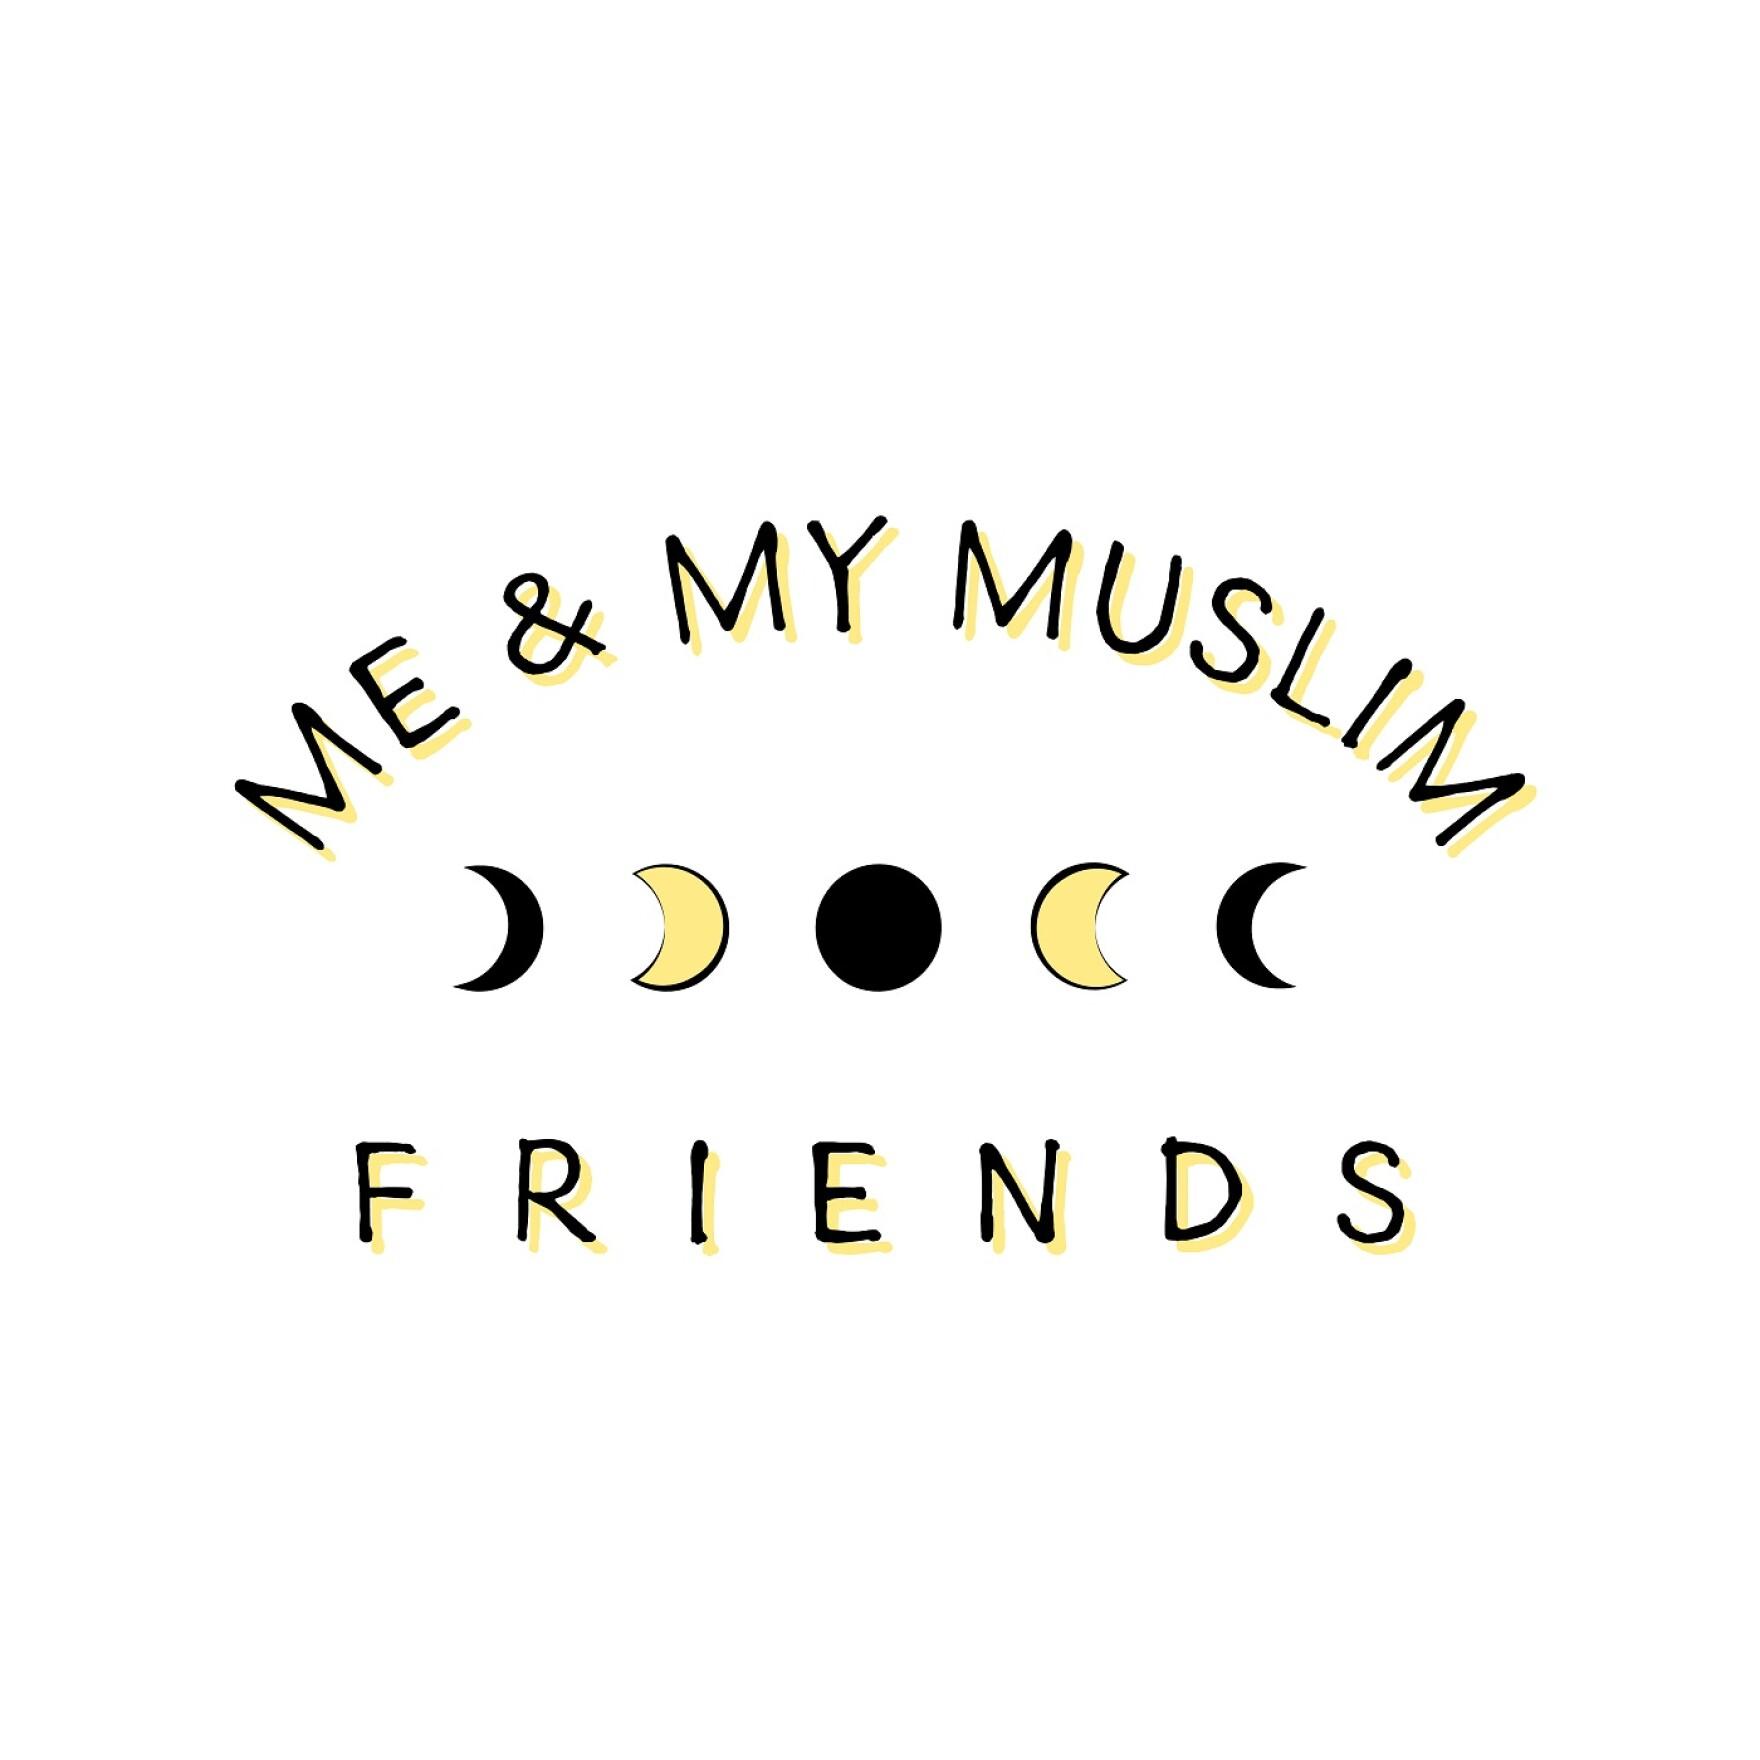 Podcast: muslim women in politics - Me and my muslim friends (WUNC)